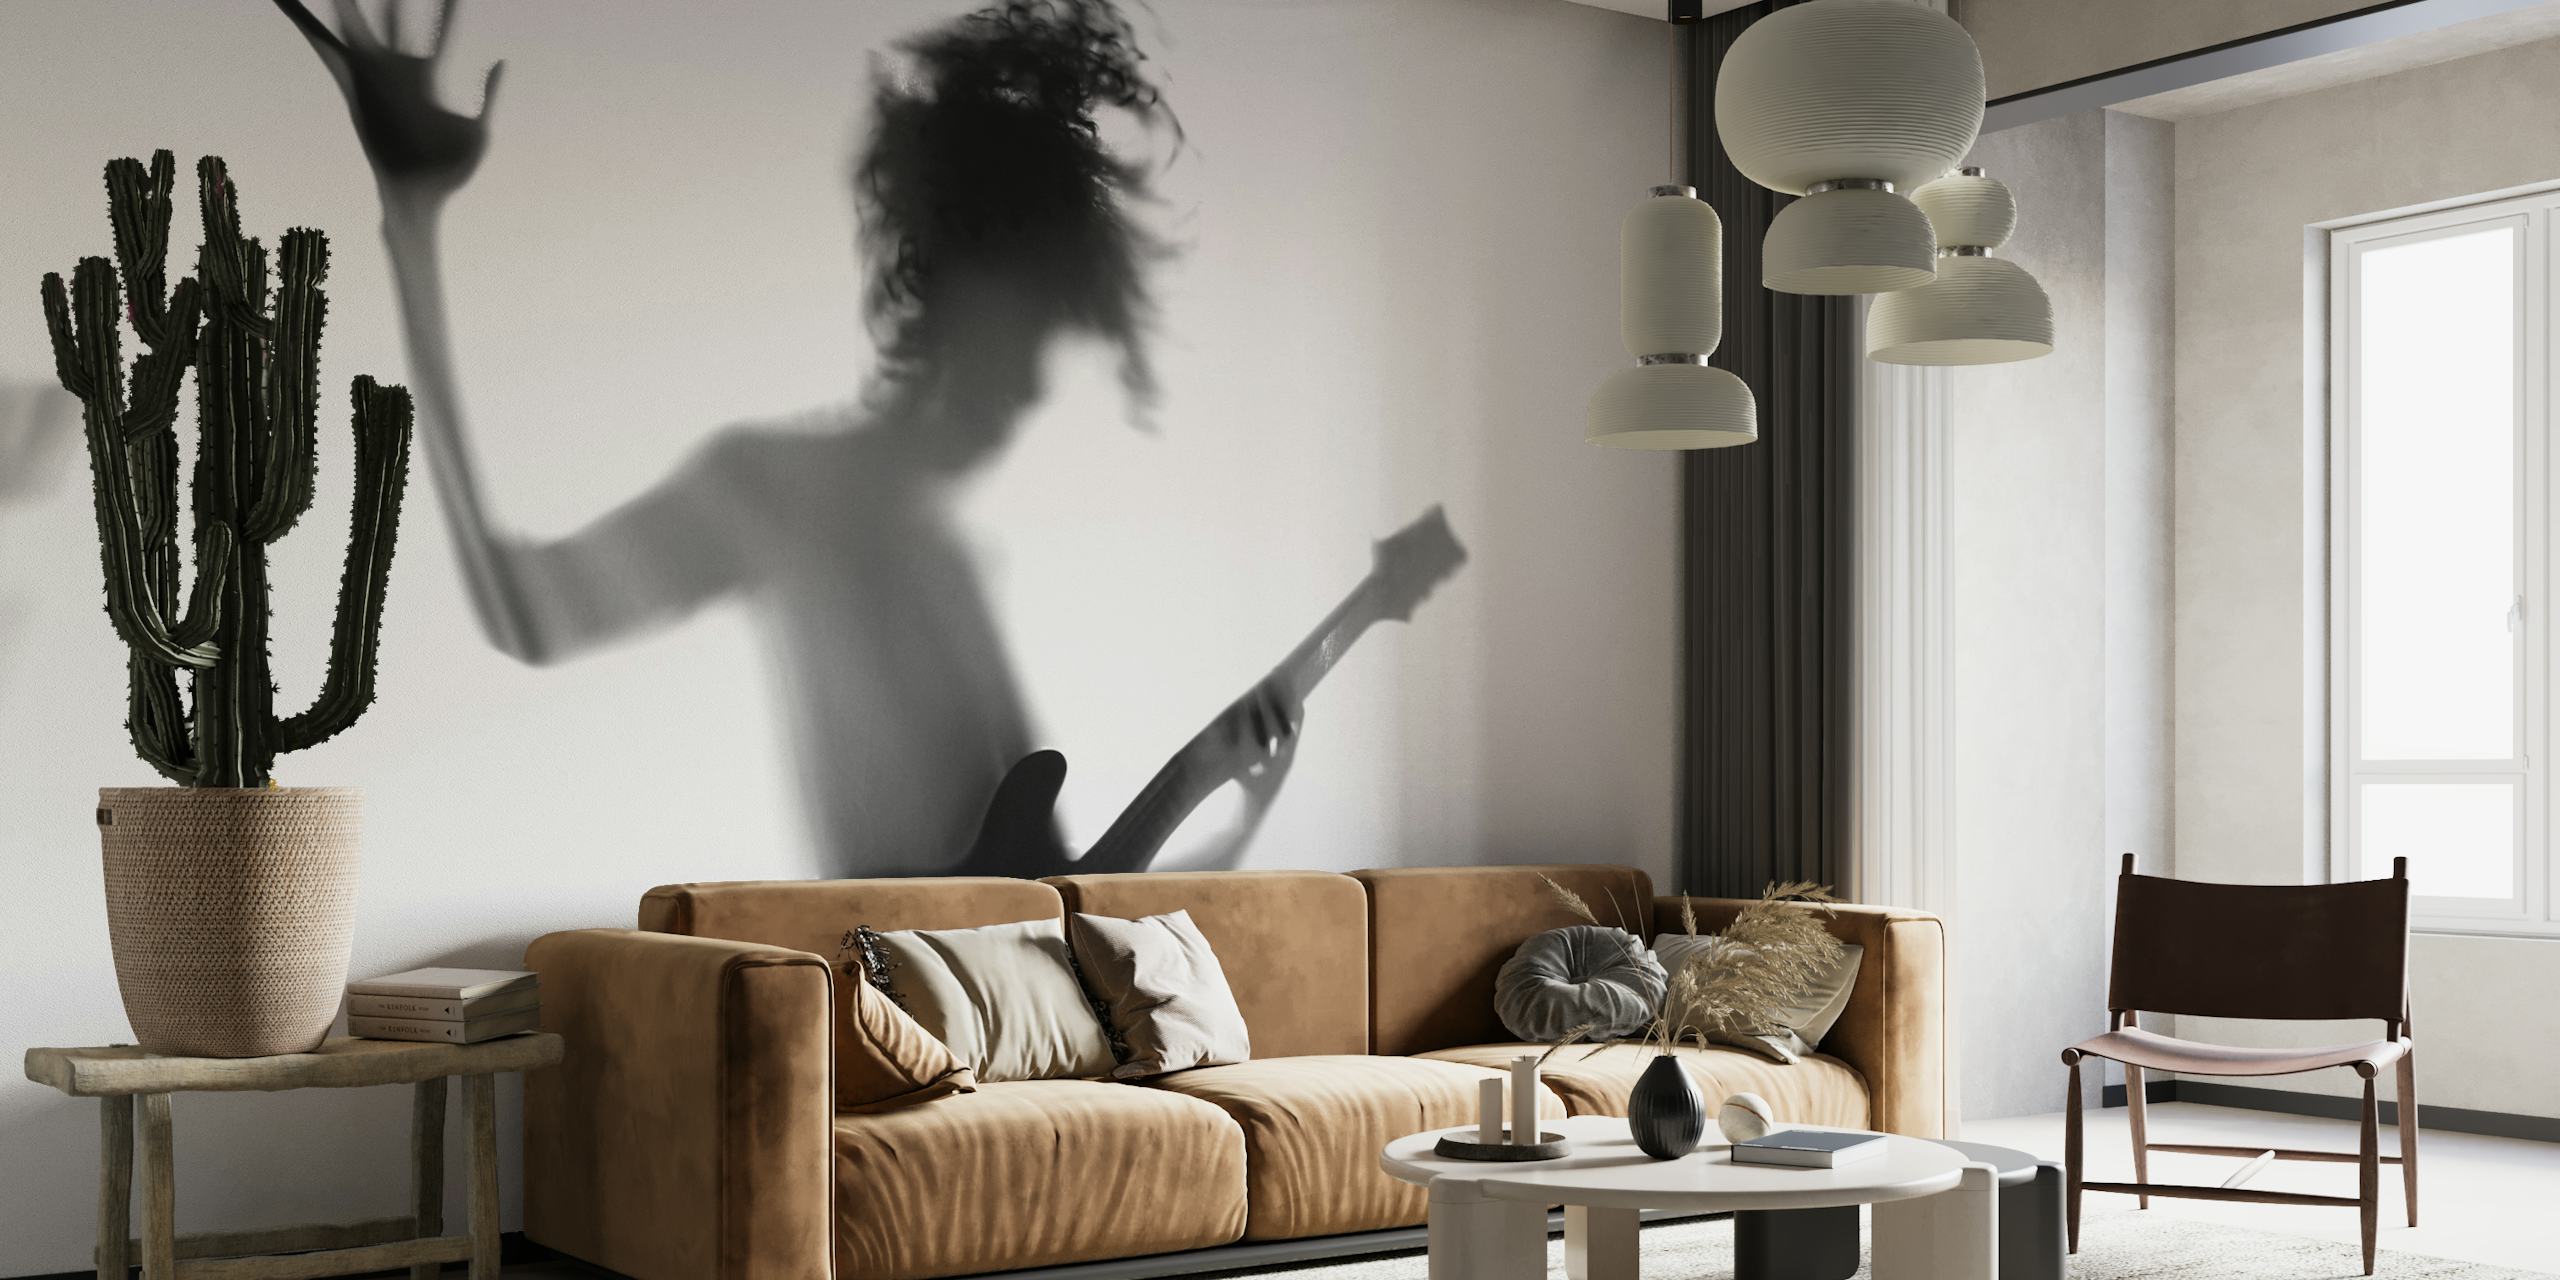 Silhuett av en person som spiller gitar i en dynamisk positur i svart og hvitt.